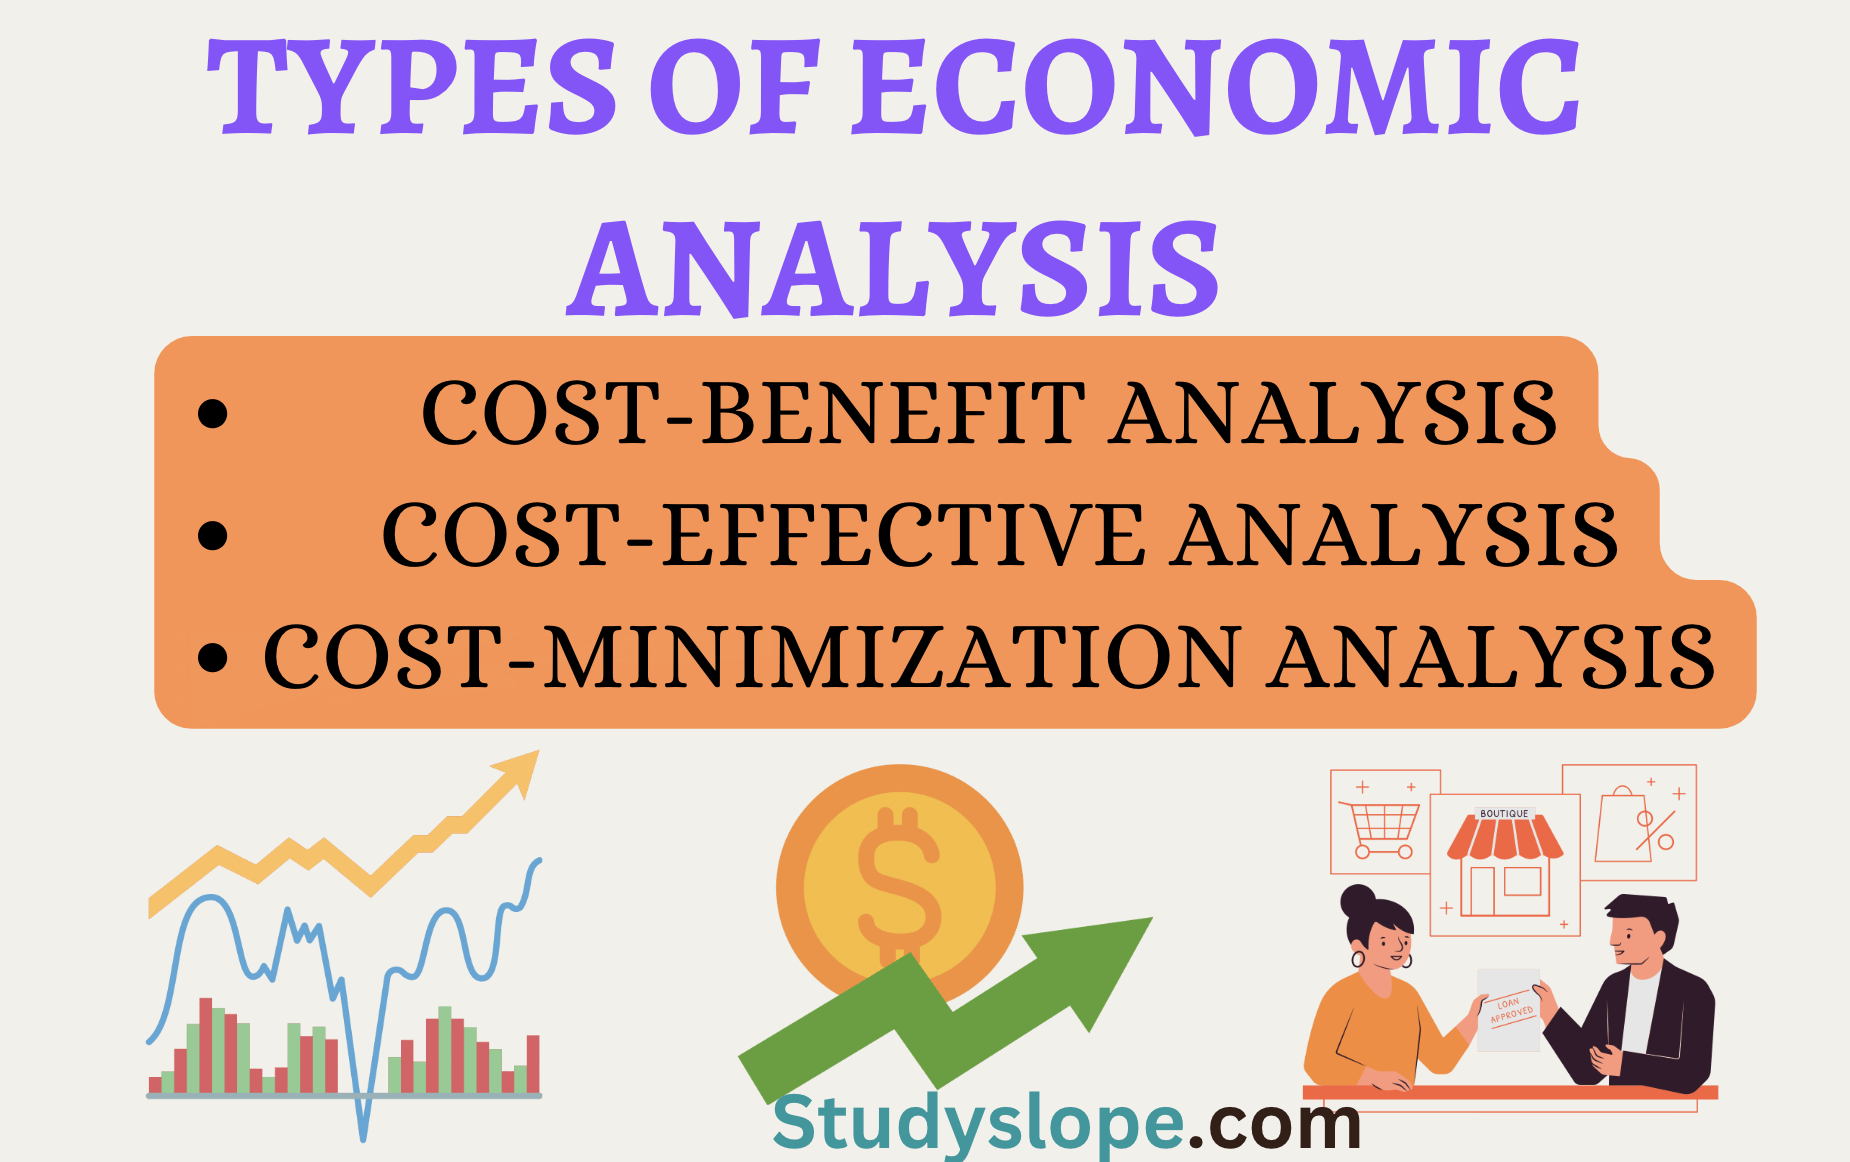 Types of Economic Analysis